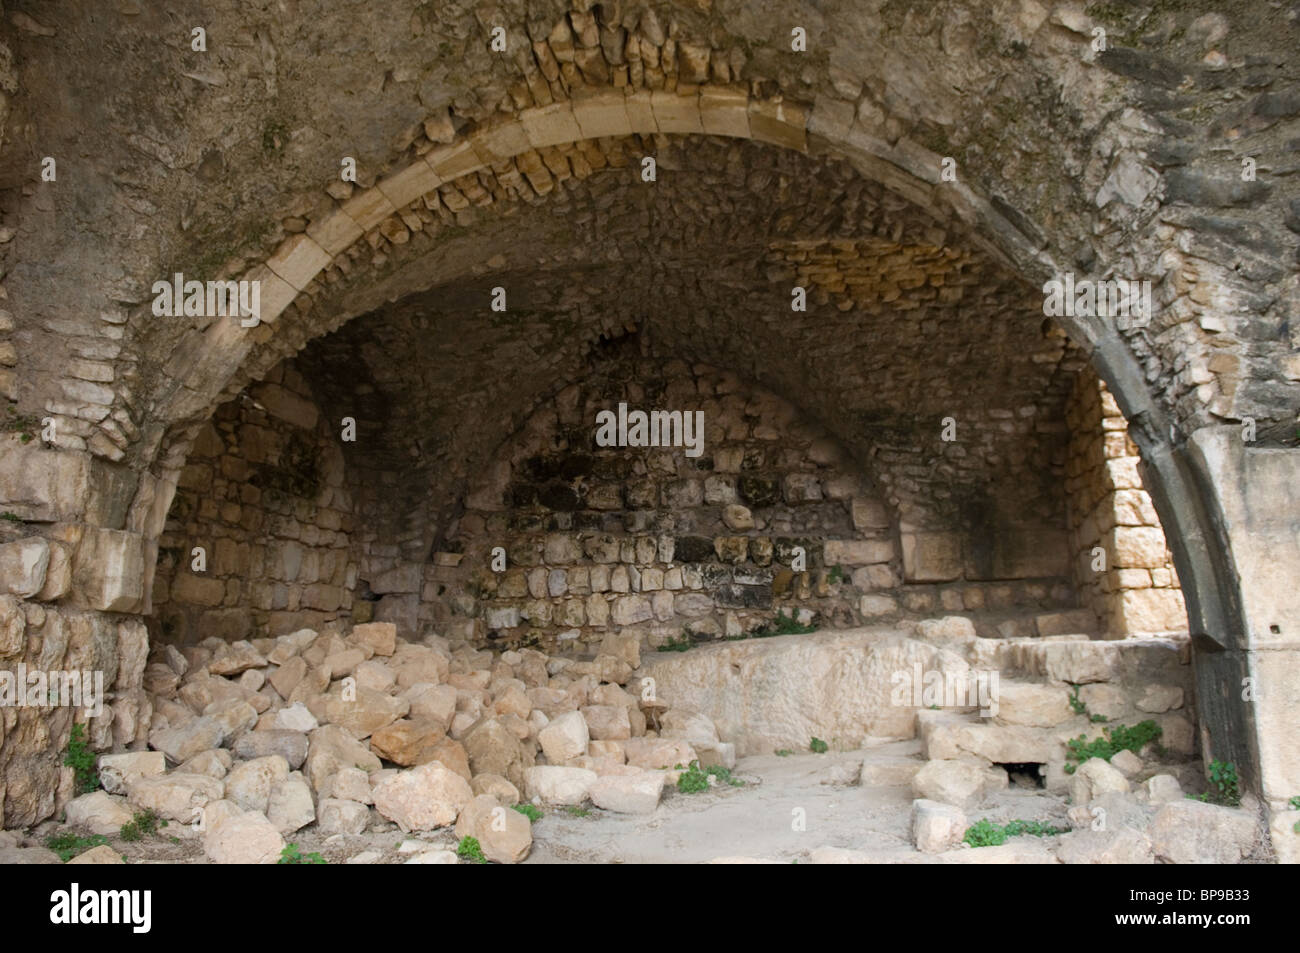 La citadelle du 12ème siècle ruines du château des Croisés à Smar Jbeil Liban Moyen Orient Banque D'Images